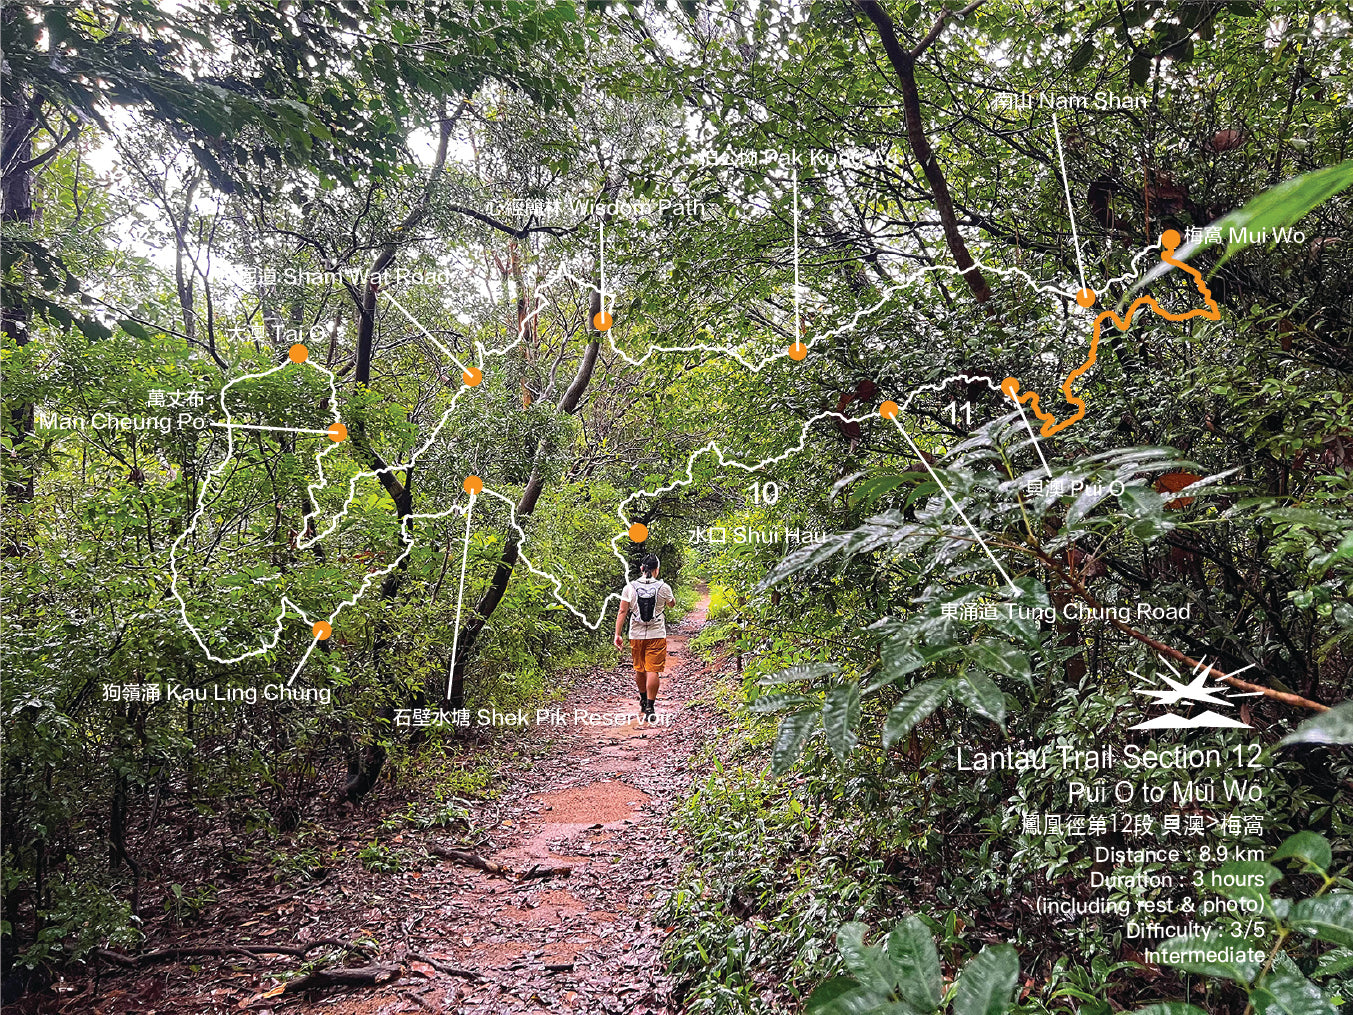 Lantau Trail Section 12 | Pui O to Mui Wo